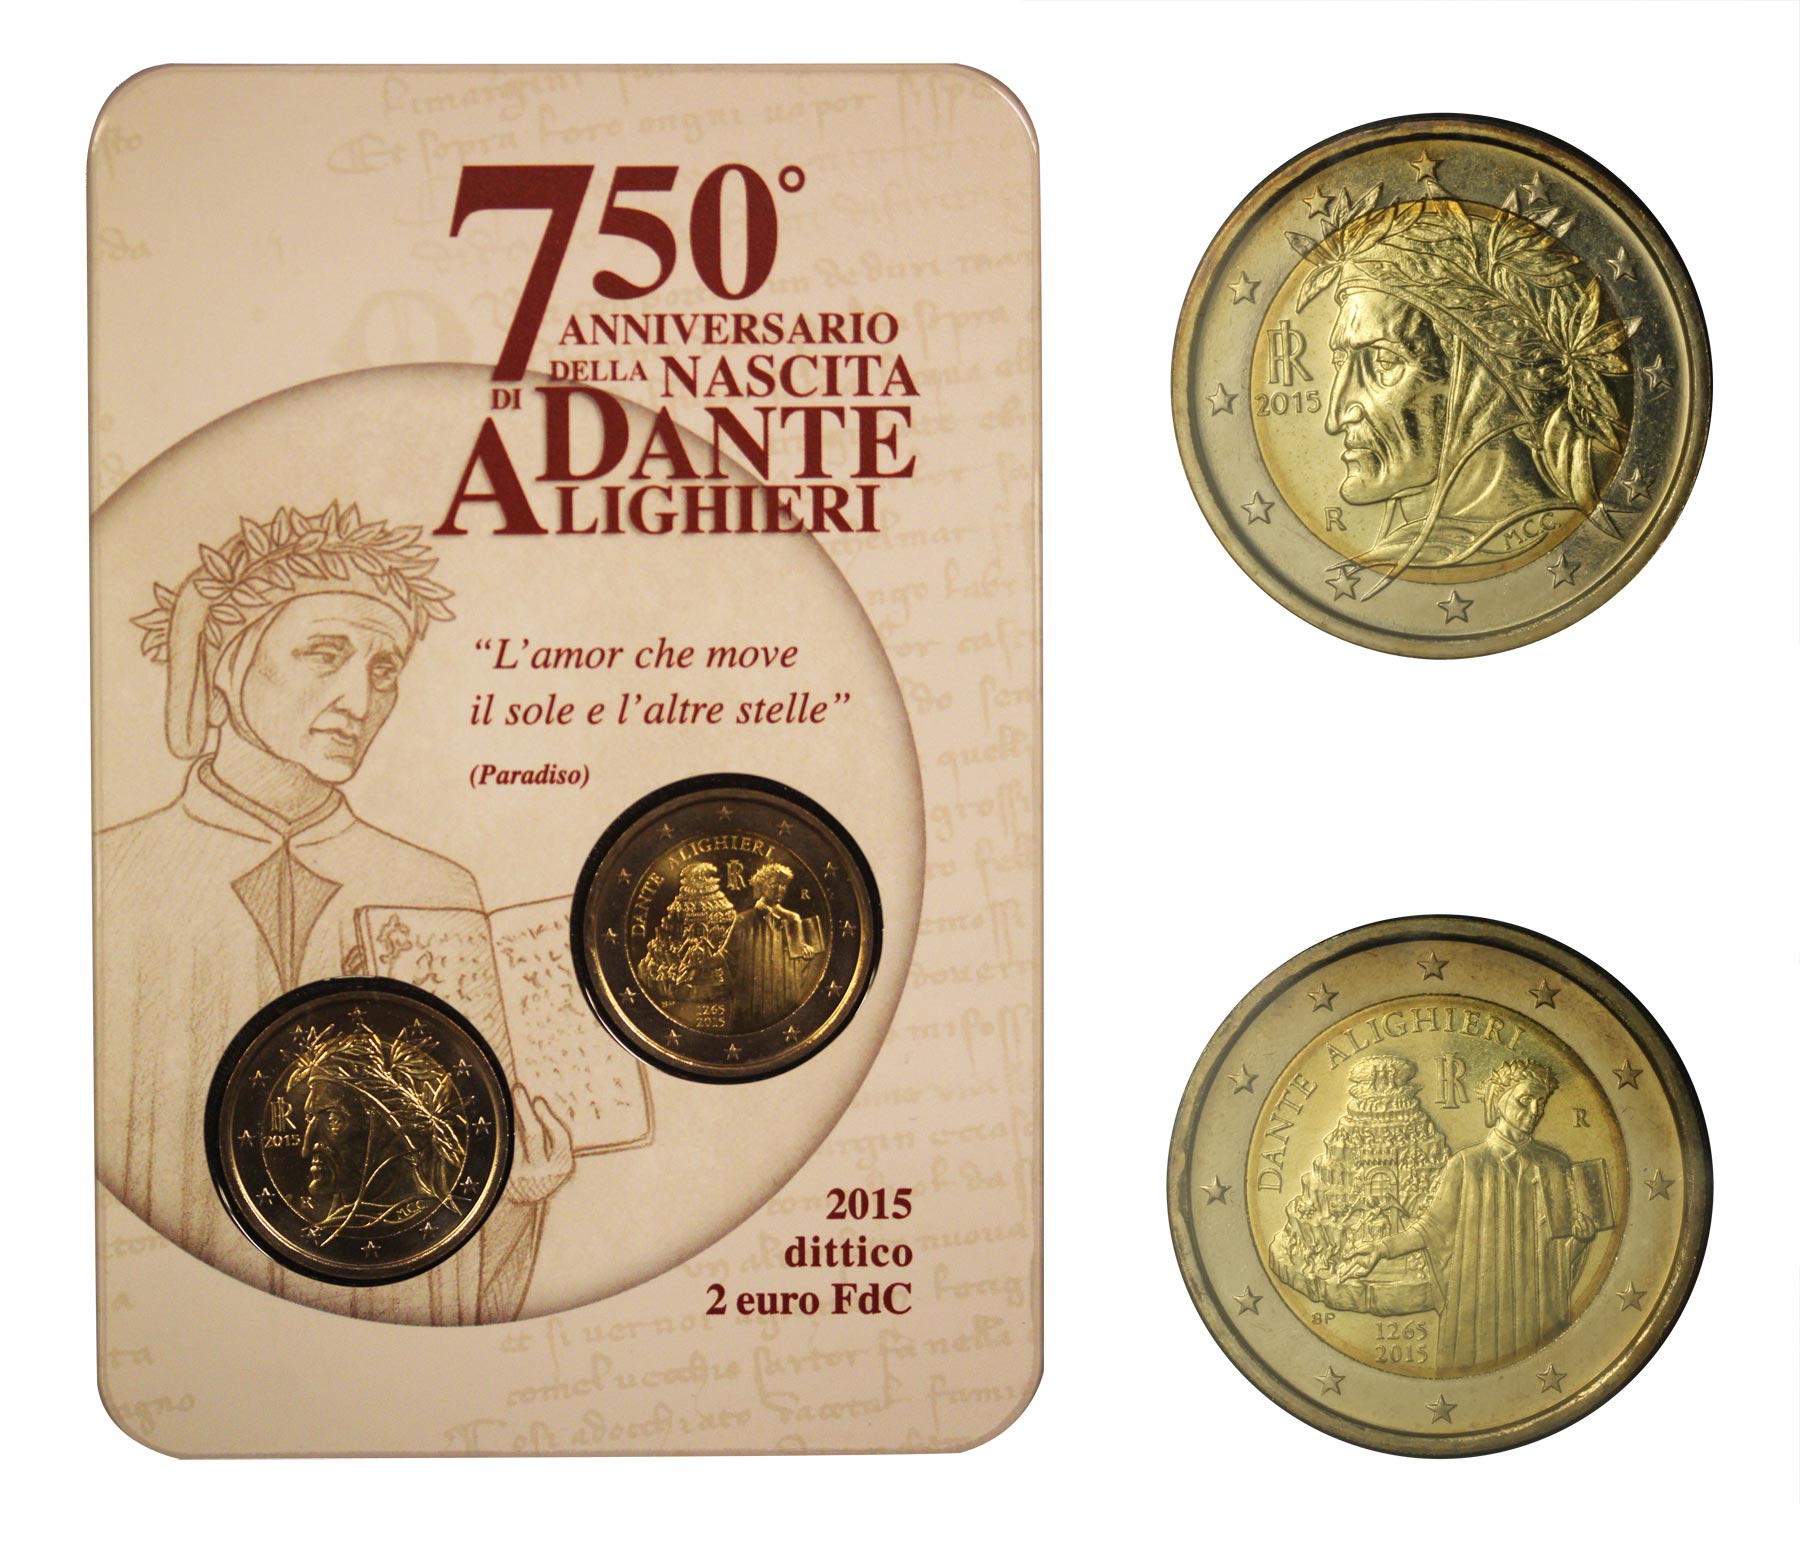 75 Anniv. della nascita di Dante Alighieri - dittico da 2 Euro in confezione ufficiale